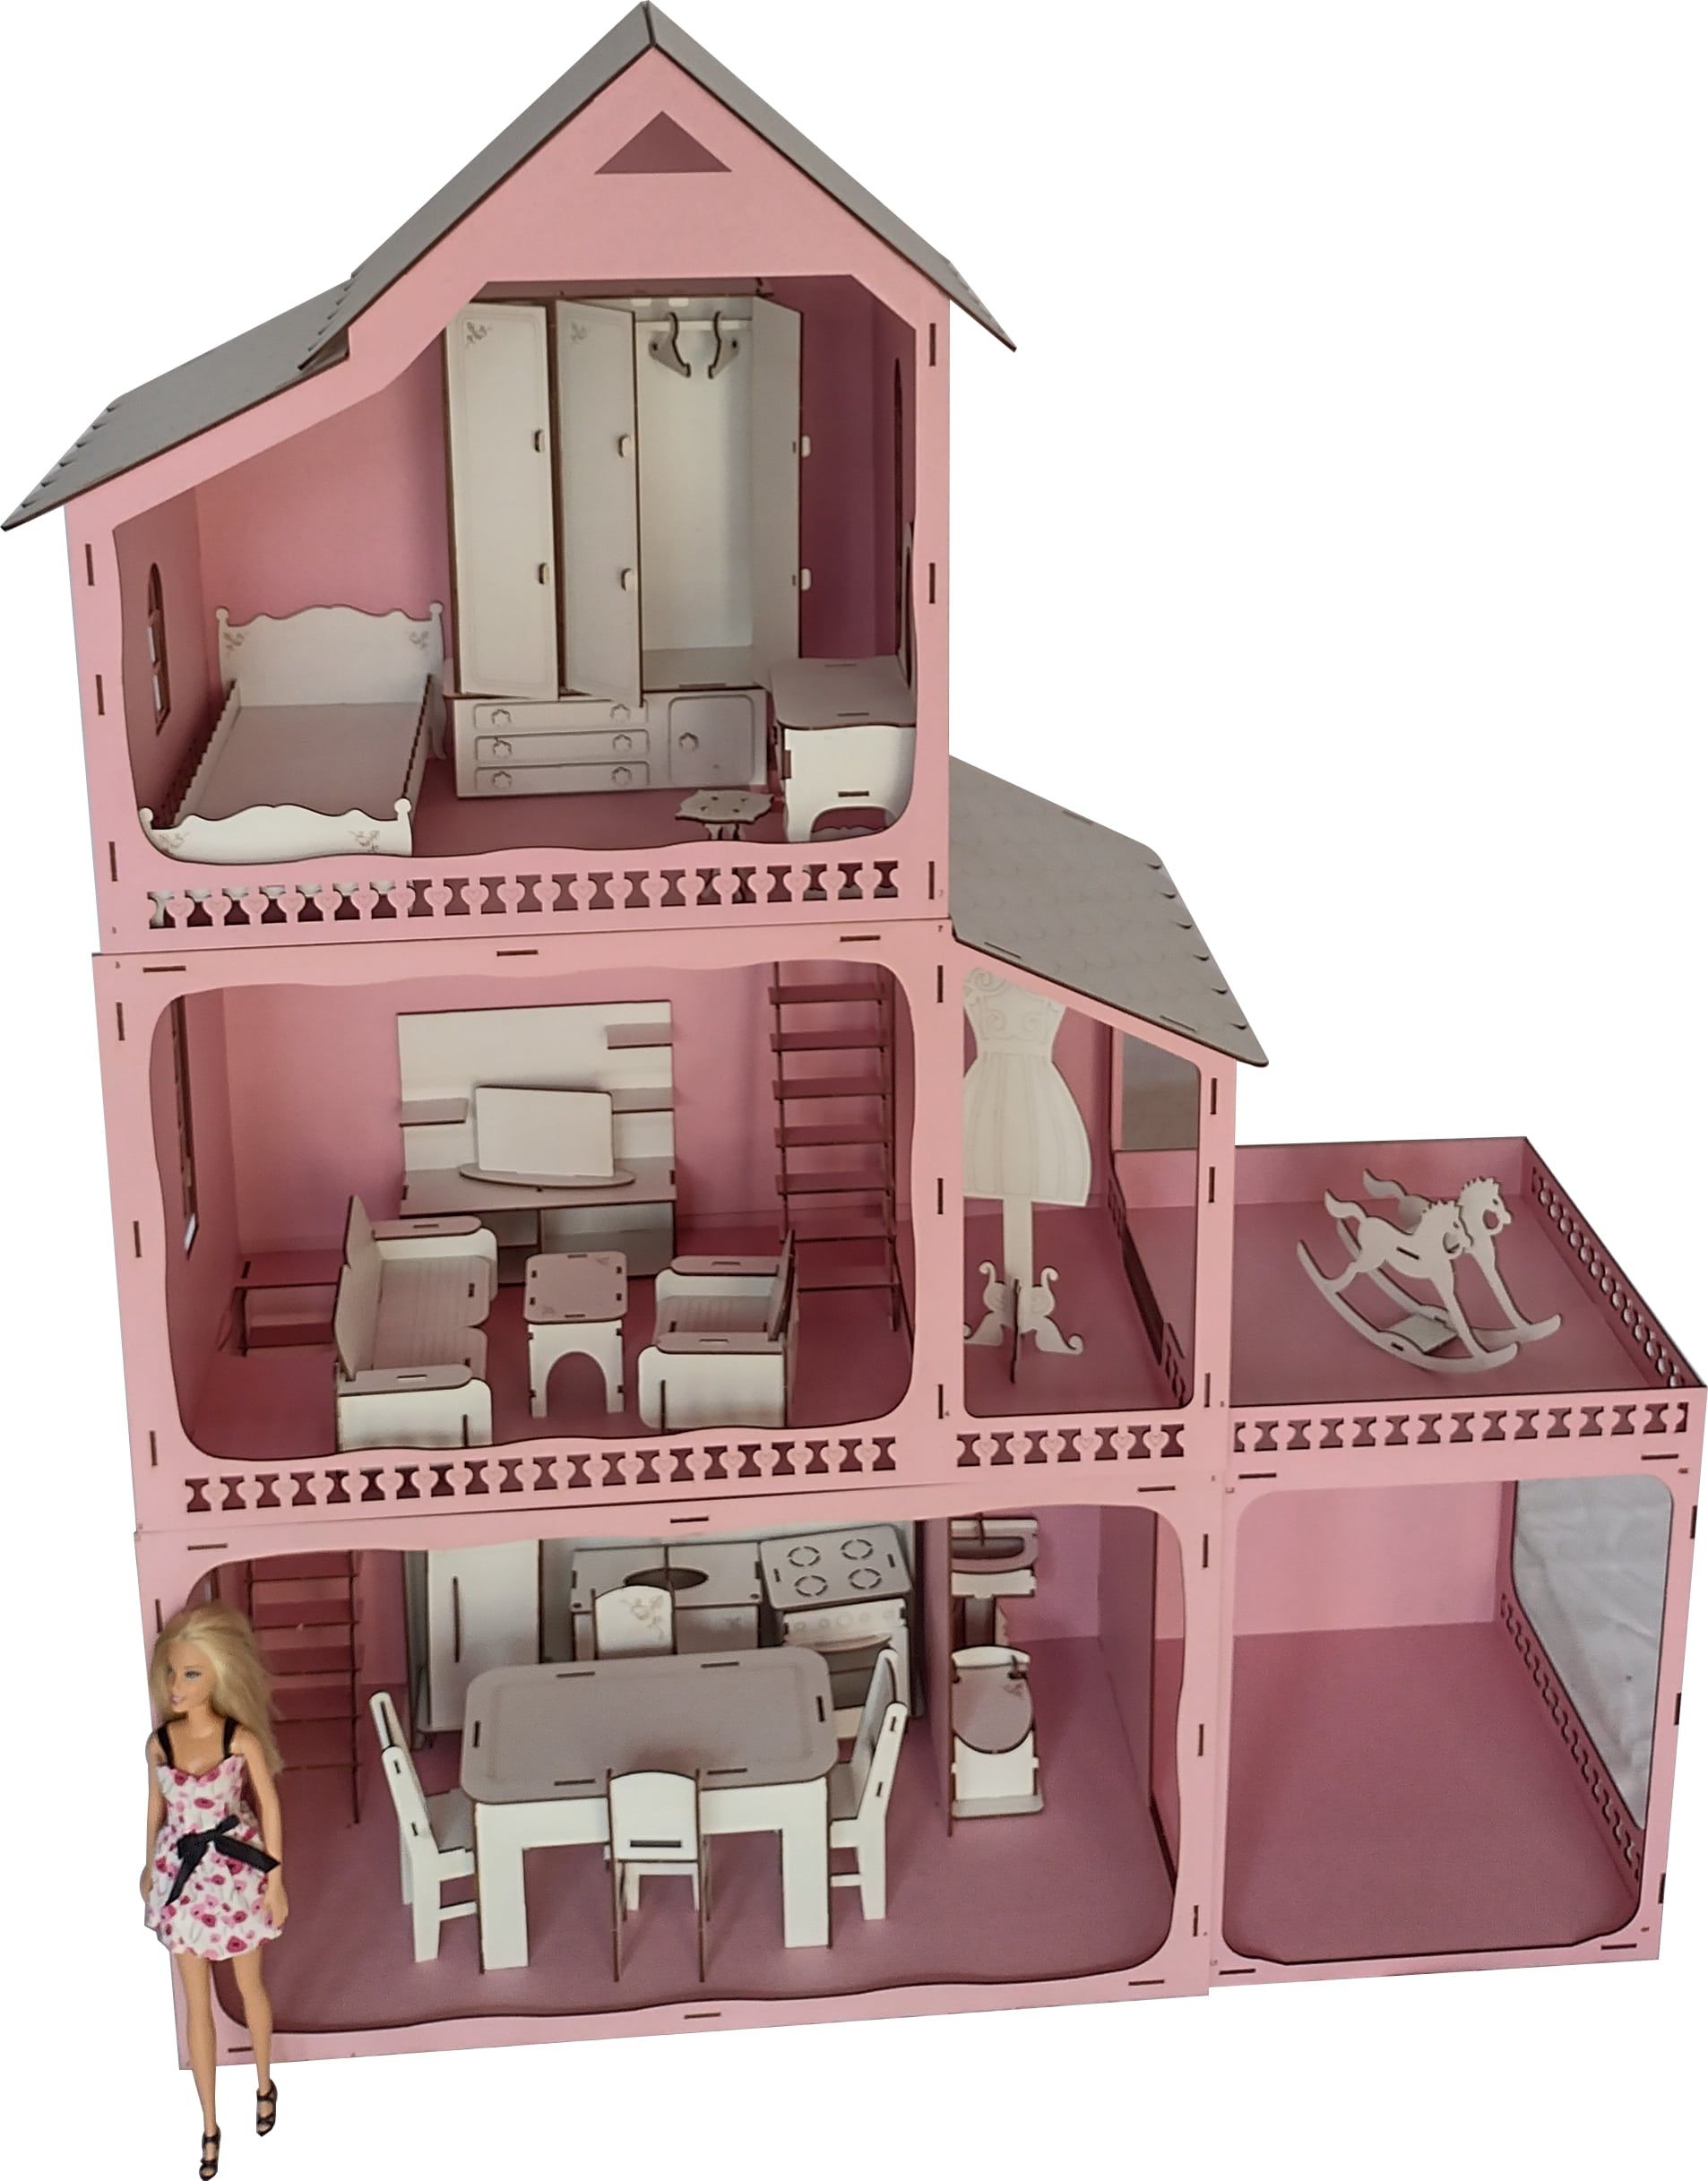 Barbie - A casinha da Barbie, CASAS